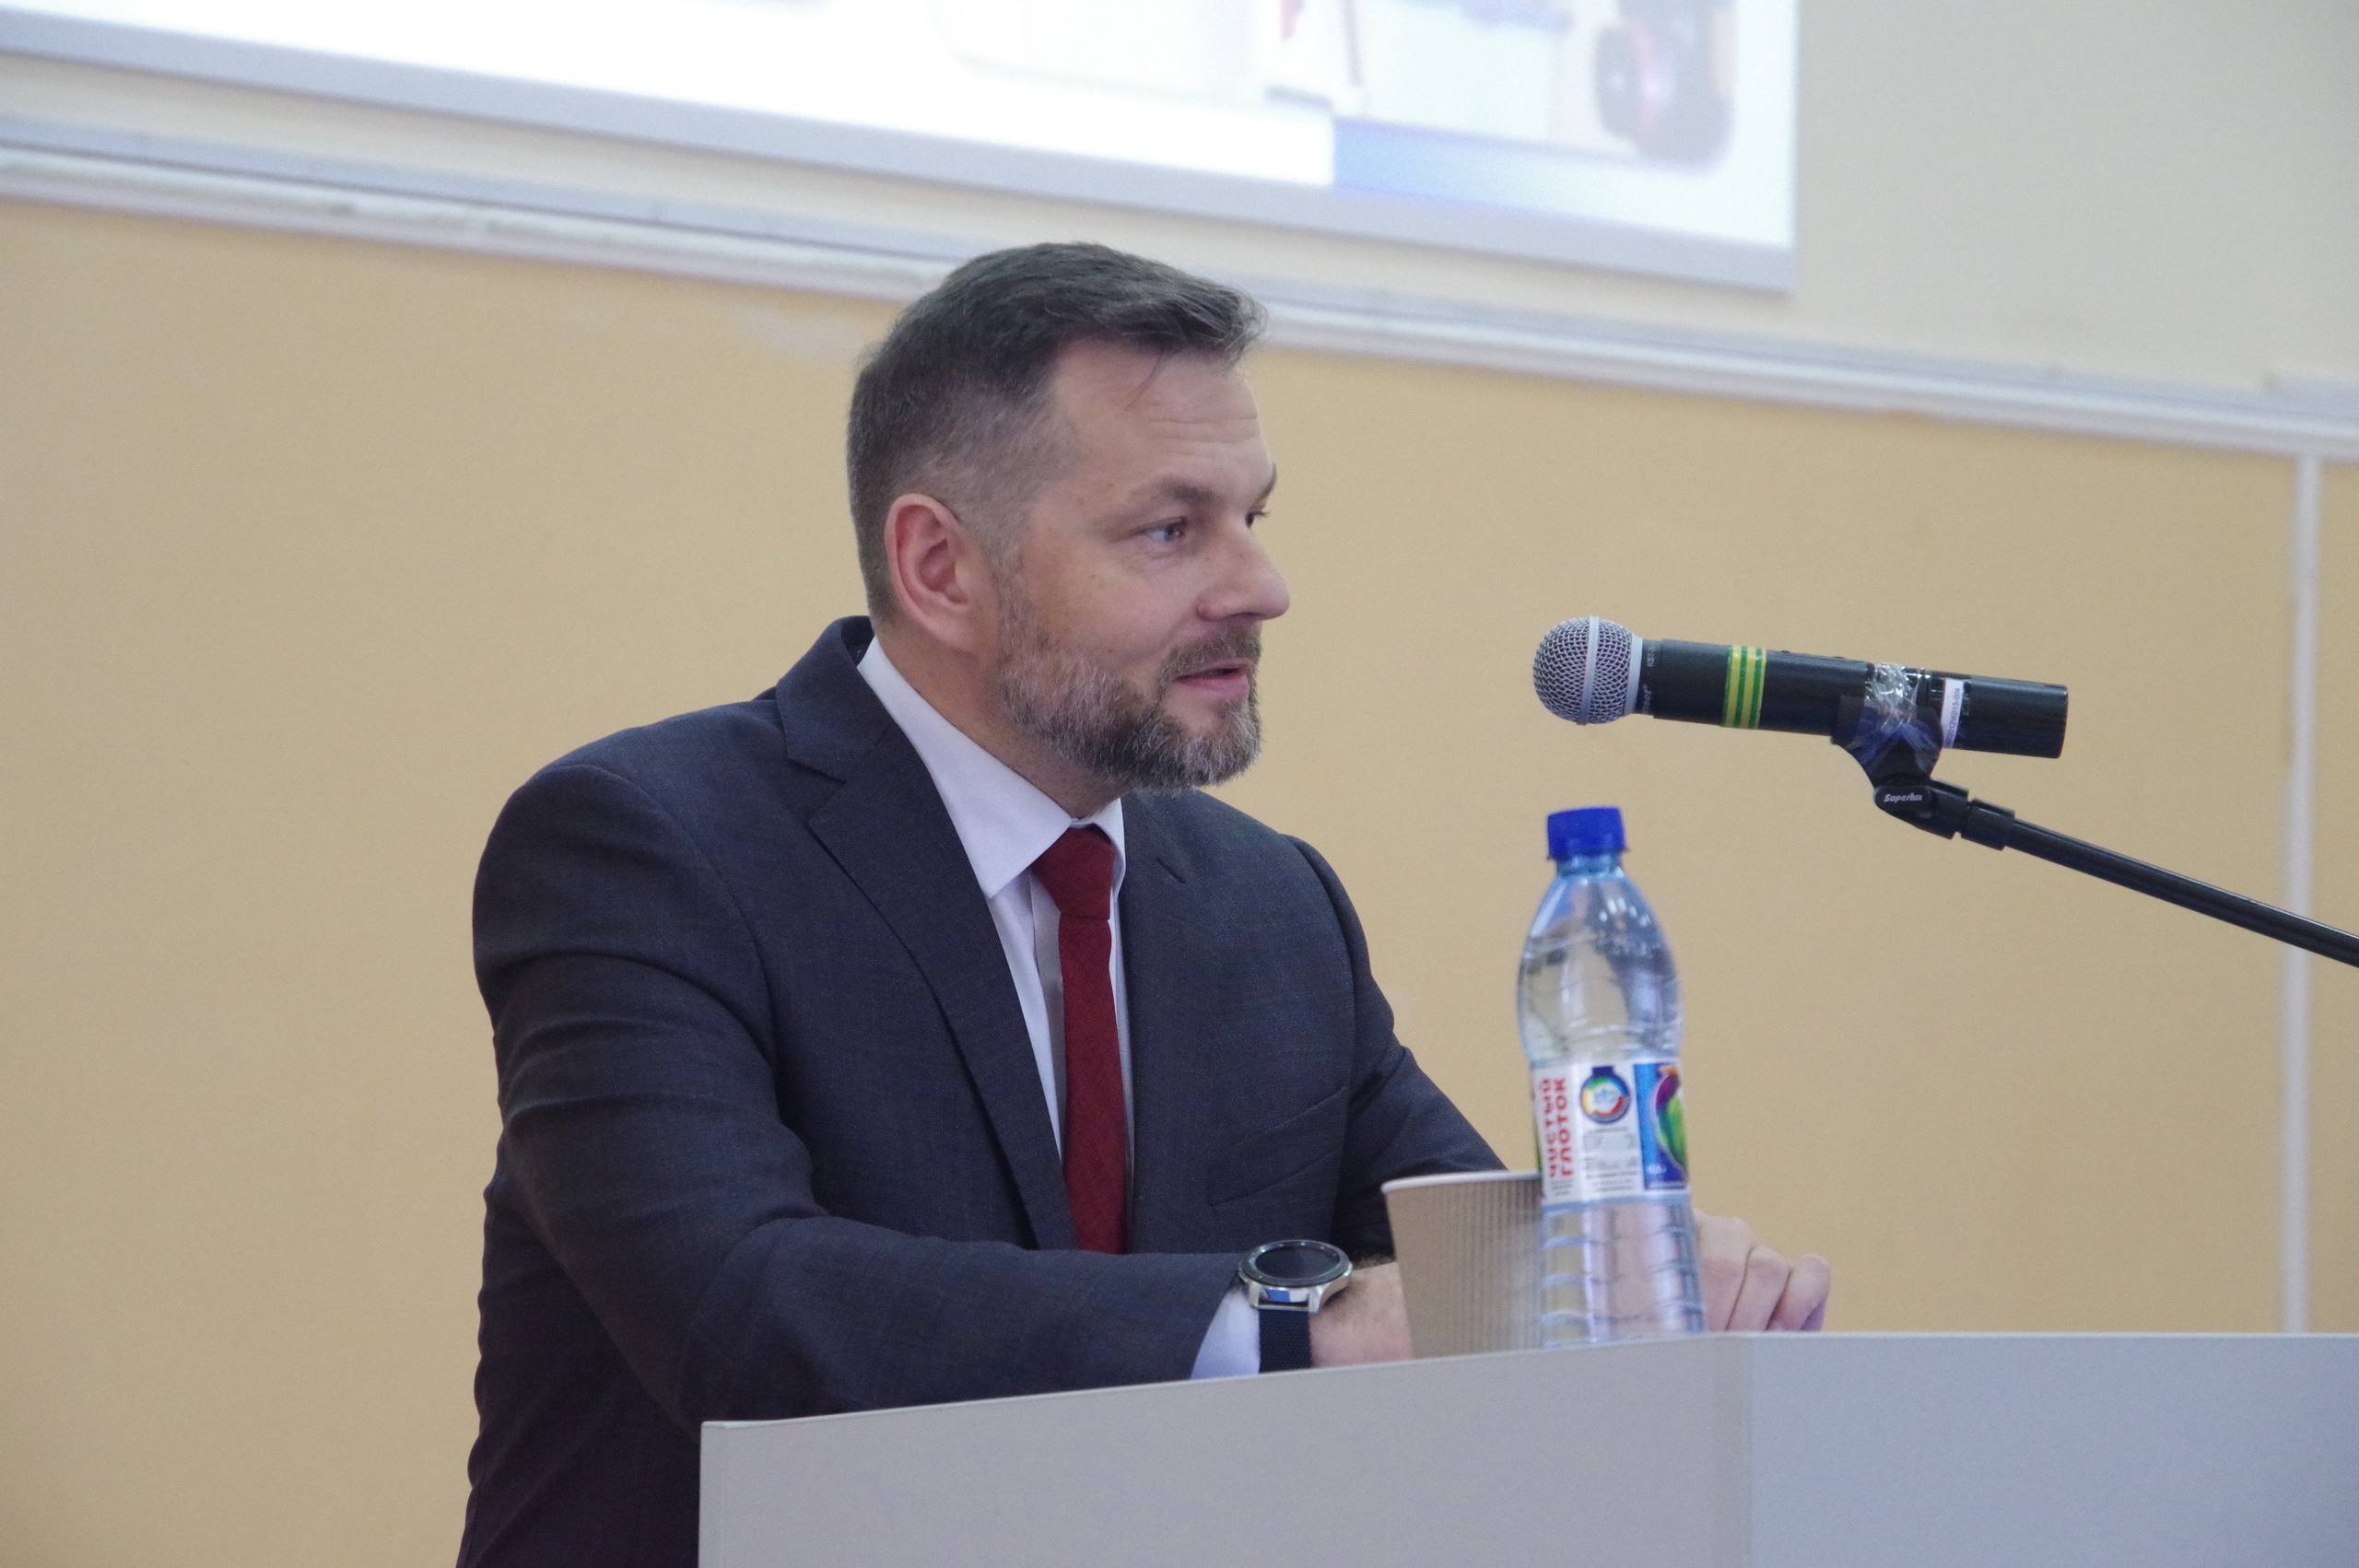 Председатель избирательной комиссии Тамбовской области Андрей Офицеров прочитал лекцию для студентов Державинского фото анонса